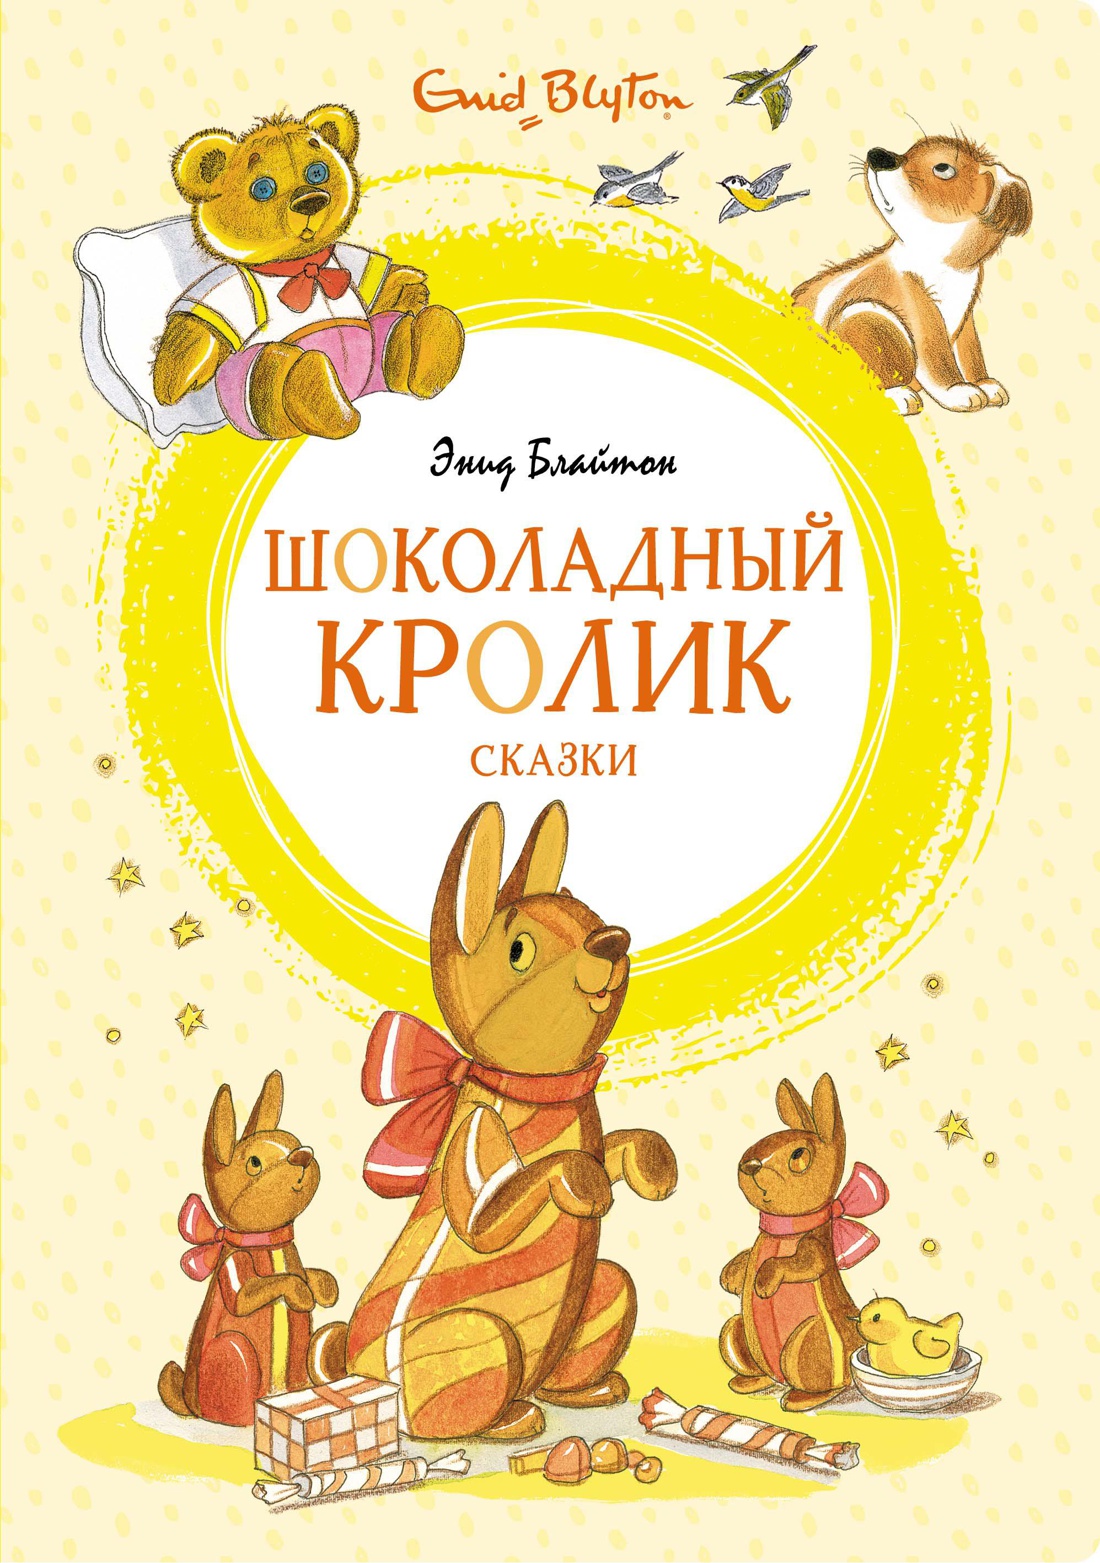 Купить книгу «Шоколадный кролик. Сказки», Энид Блайтон | Издательство  «Махаон», ISBN: 978-5-389-19630-8